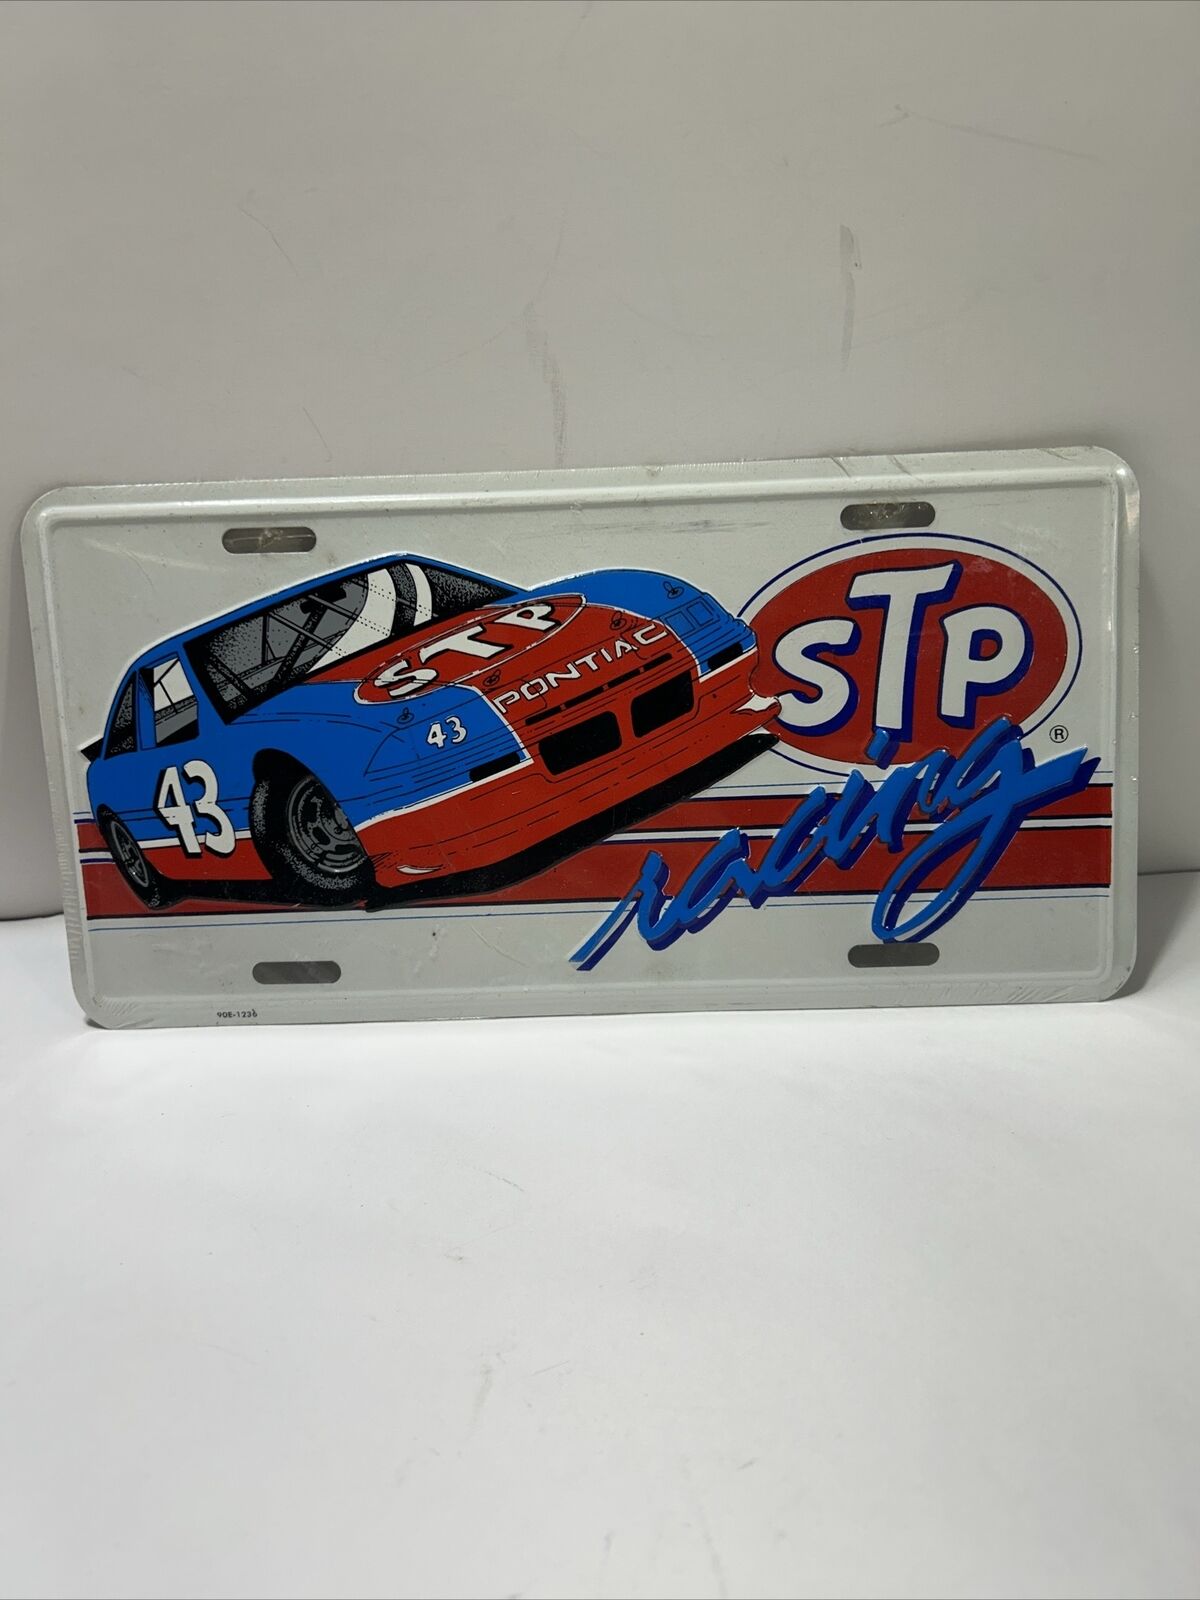 Vintage looking STP Racing Team 43 License Plate  1981